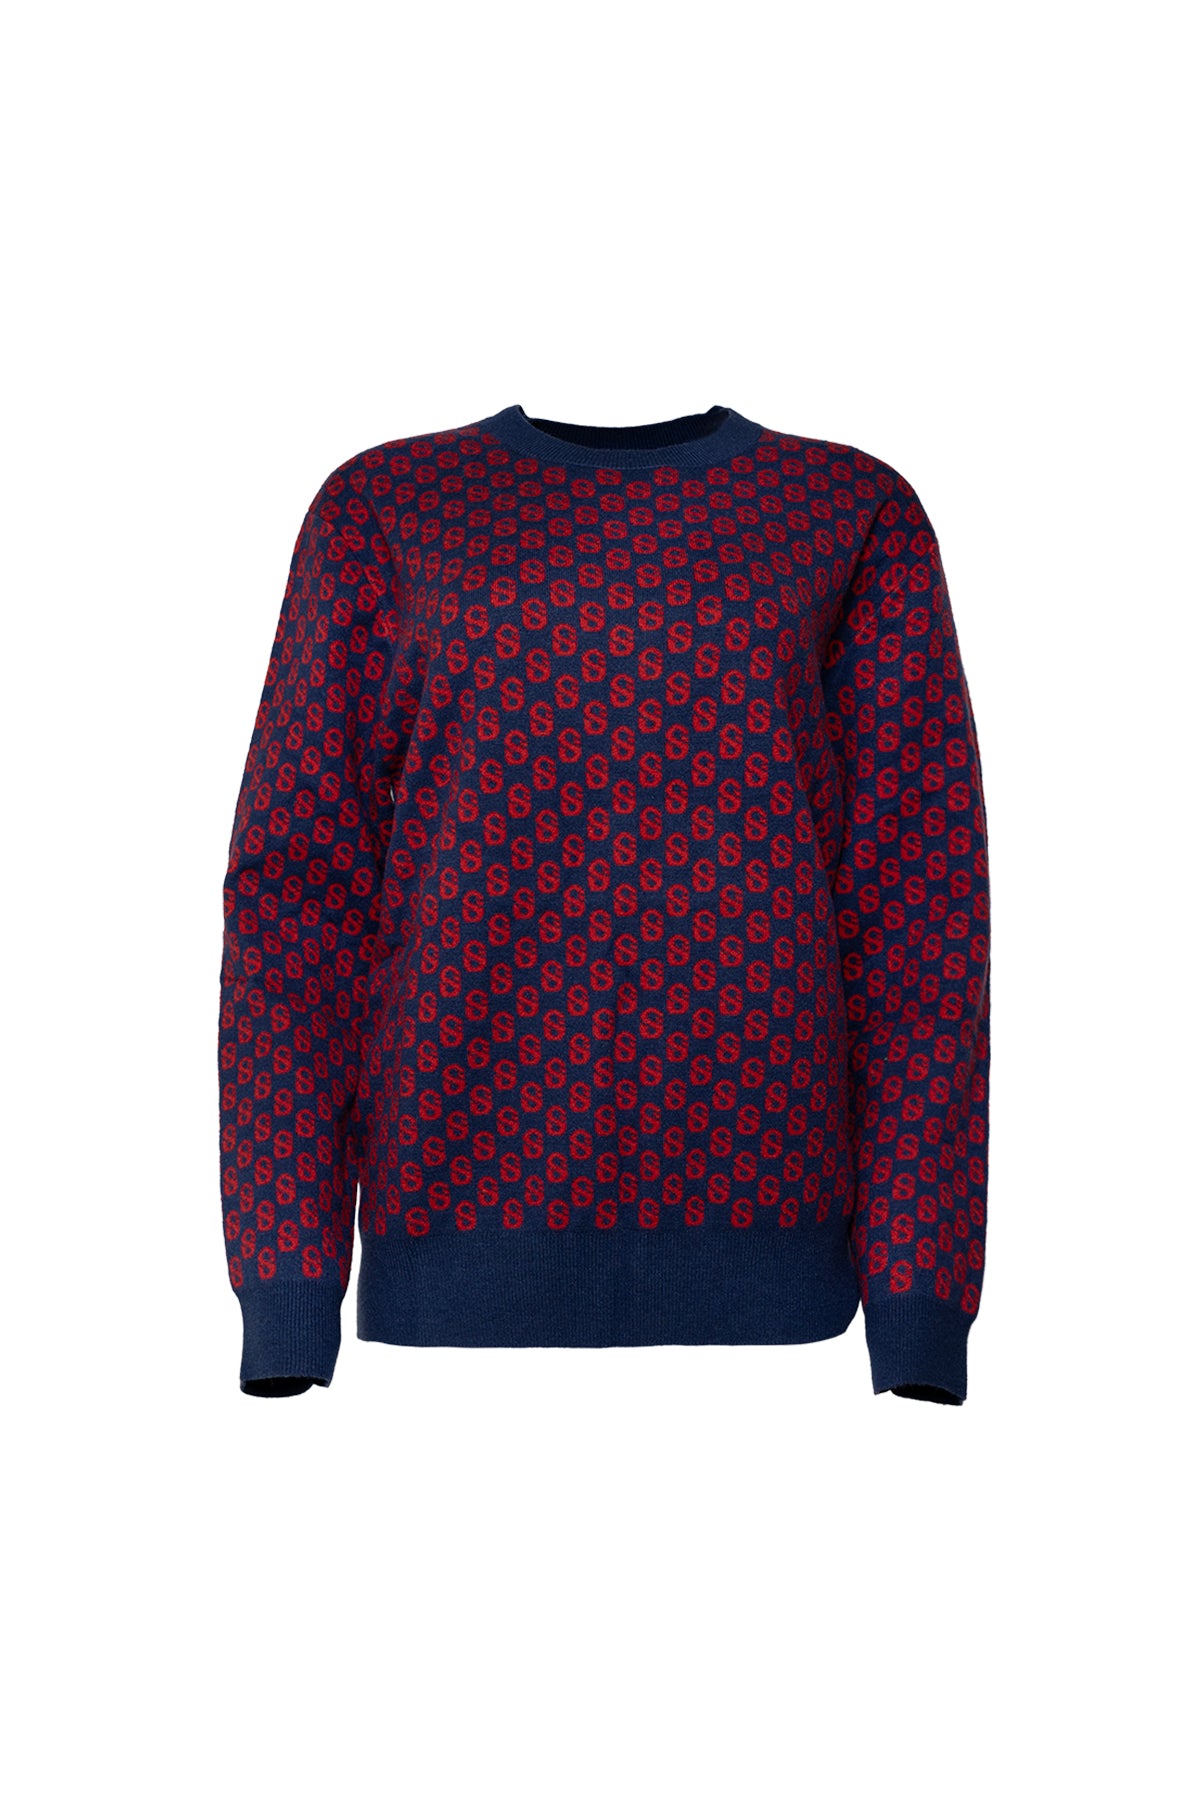 Signature Monogram Sweater - Carmine